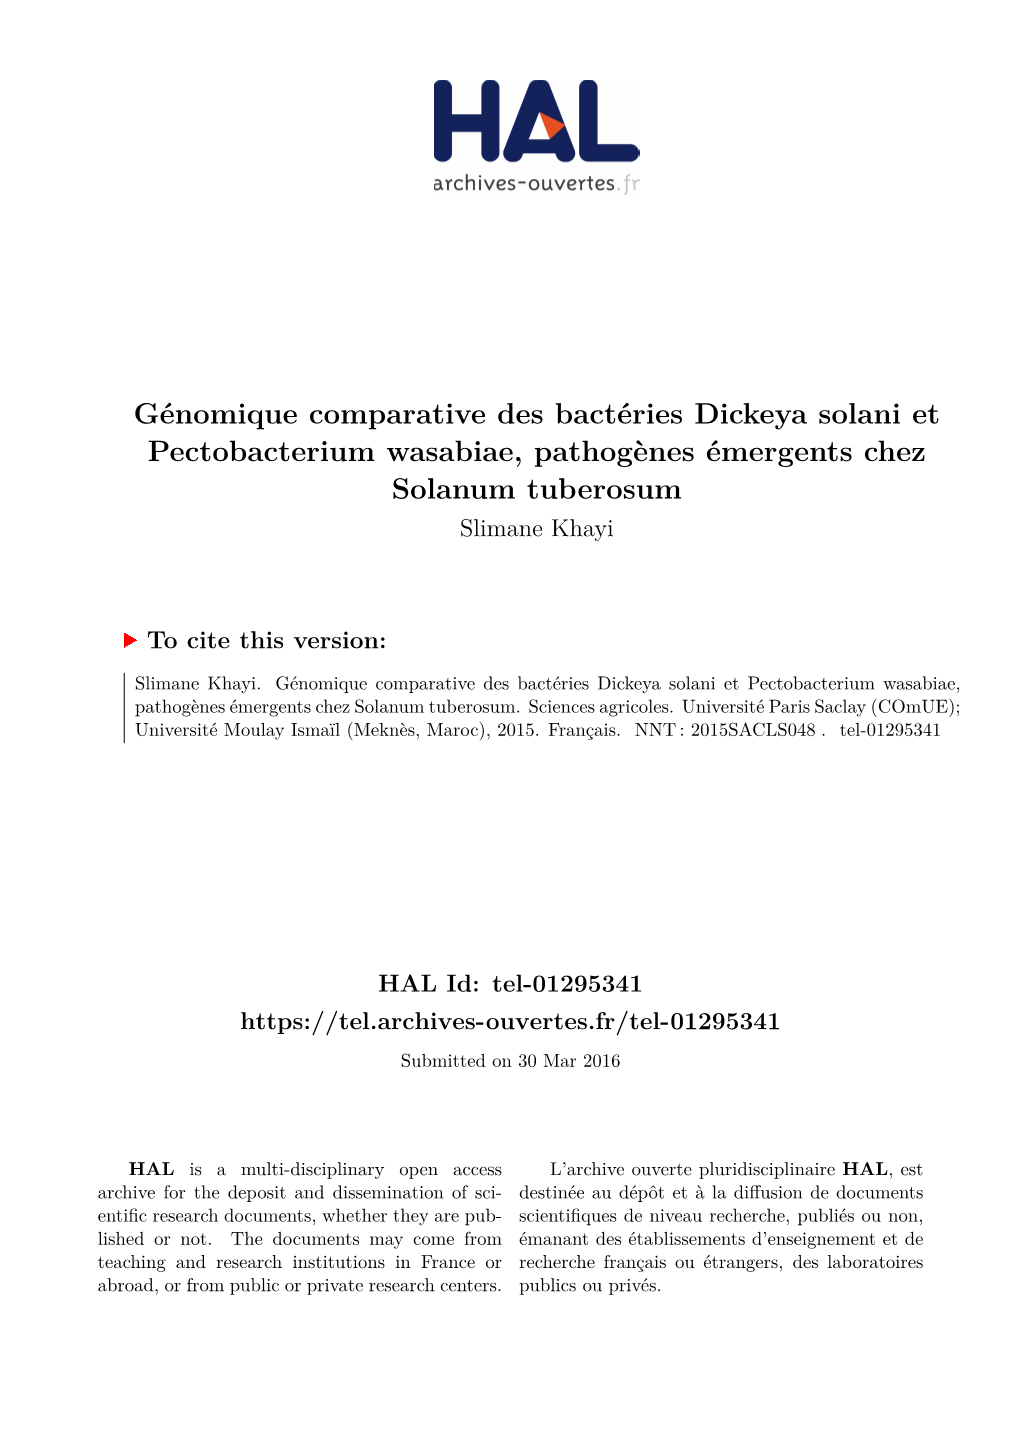 Génomique Comparative Des Bactéries Dickeya Solani Et Pectobacterium Wasabiae, Pathogènes Émergents Chez Solanum Tuberosum Slimane Khayi